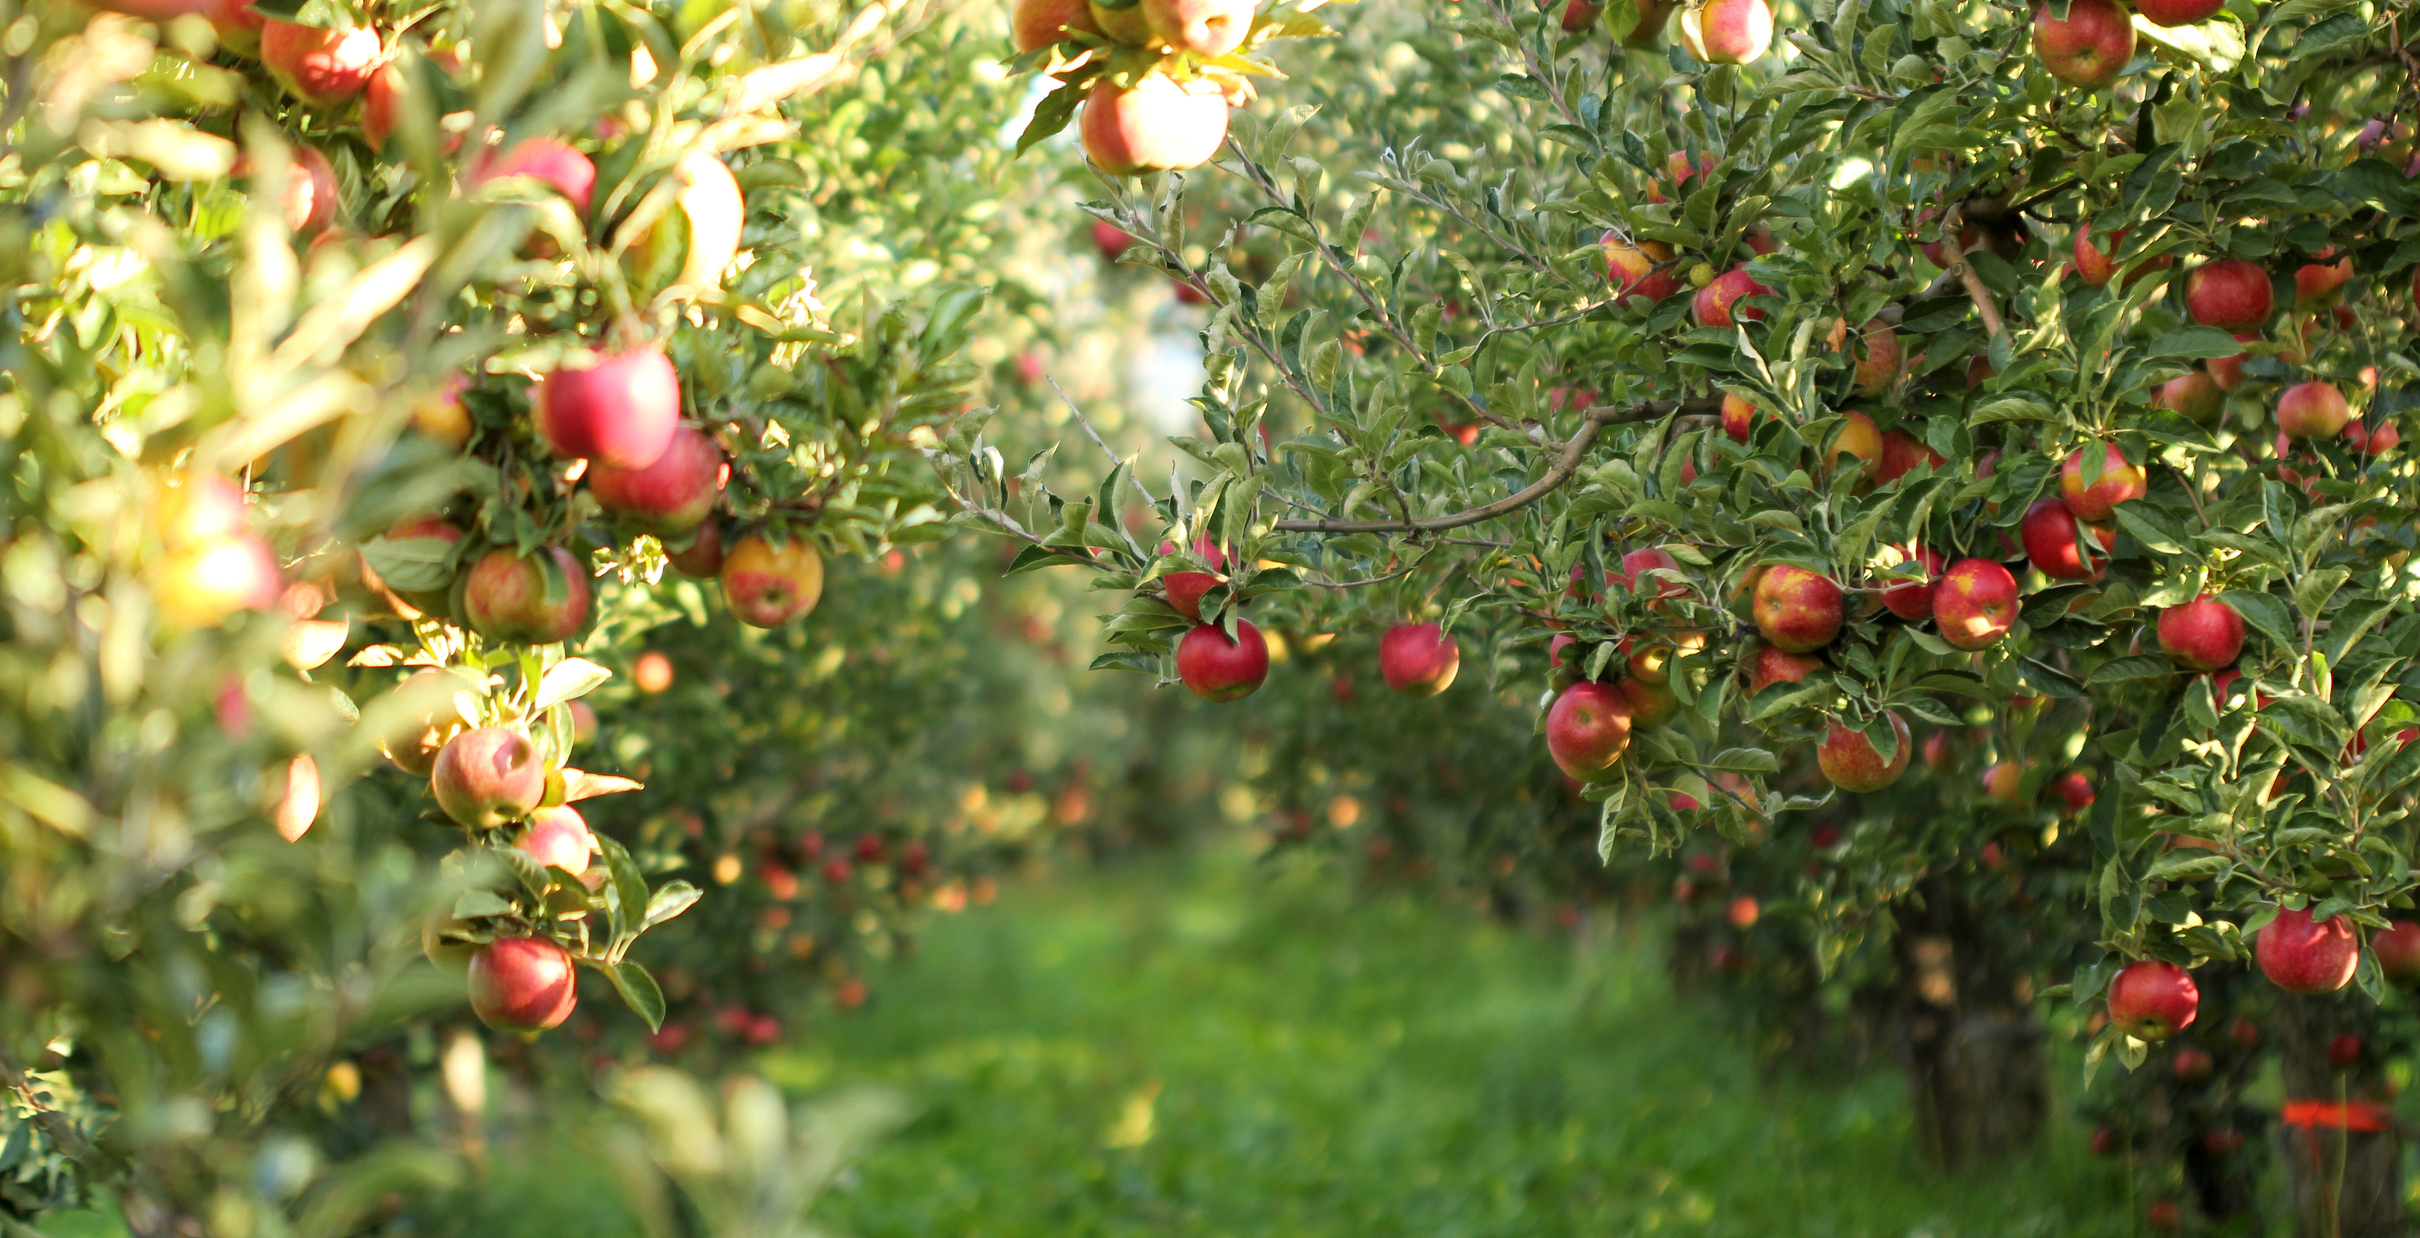 「りんごDX」実証実験開始─IoTスマート農業による持続可能なりんご産業の実現へ